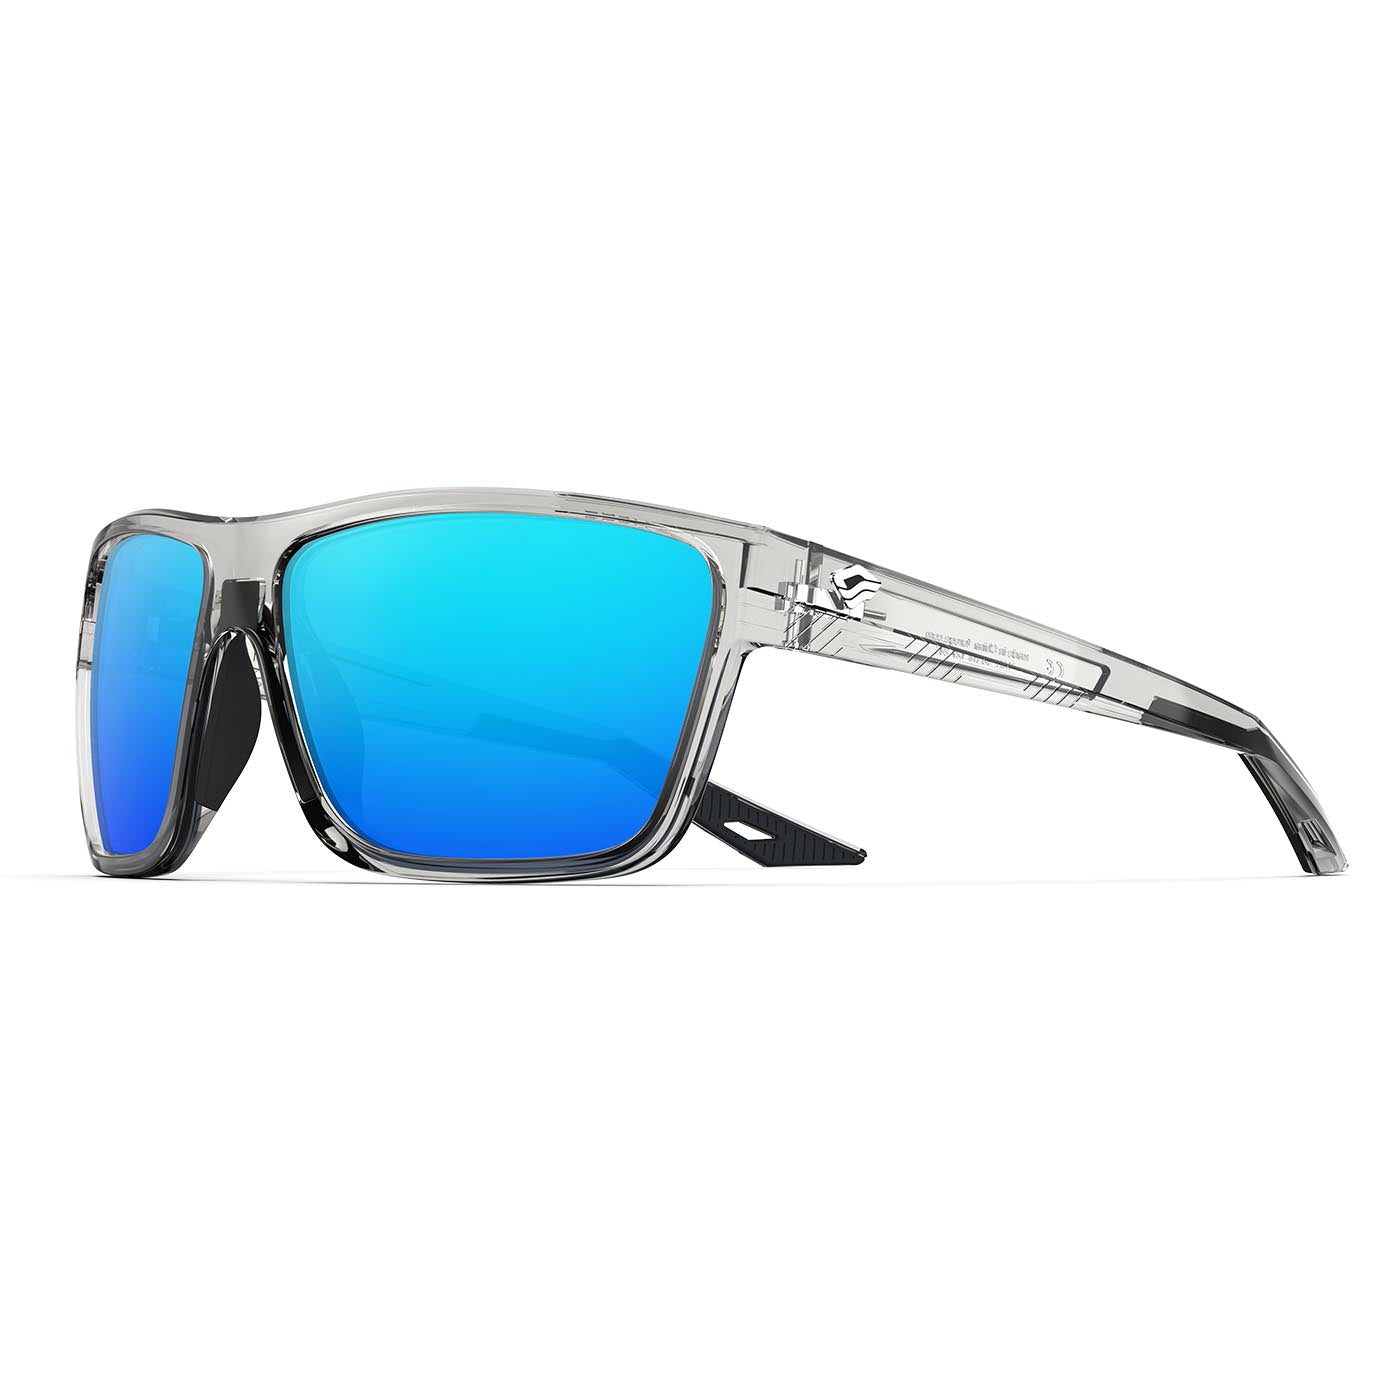 Blue Ridge Polarized Aviator Sunglasses - Lifetime Warranty - Men & Women  Sports Glasses for Fishing, Boating, Beach, Golf, & Driving - Black Frame & Blue  Lenses